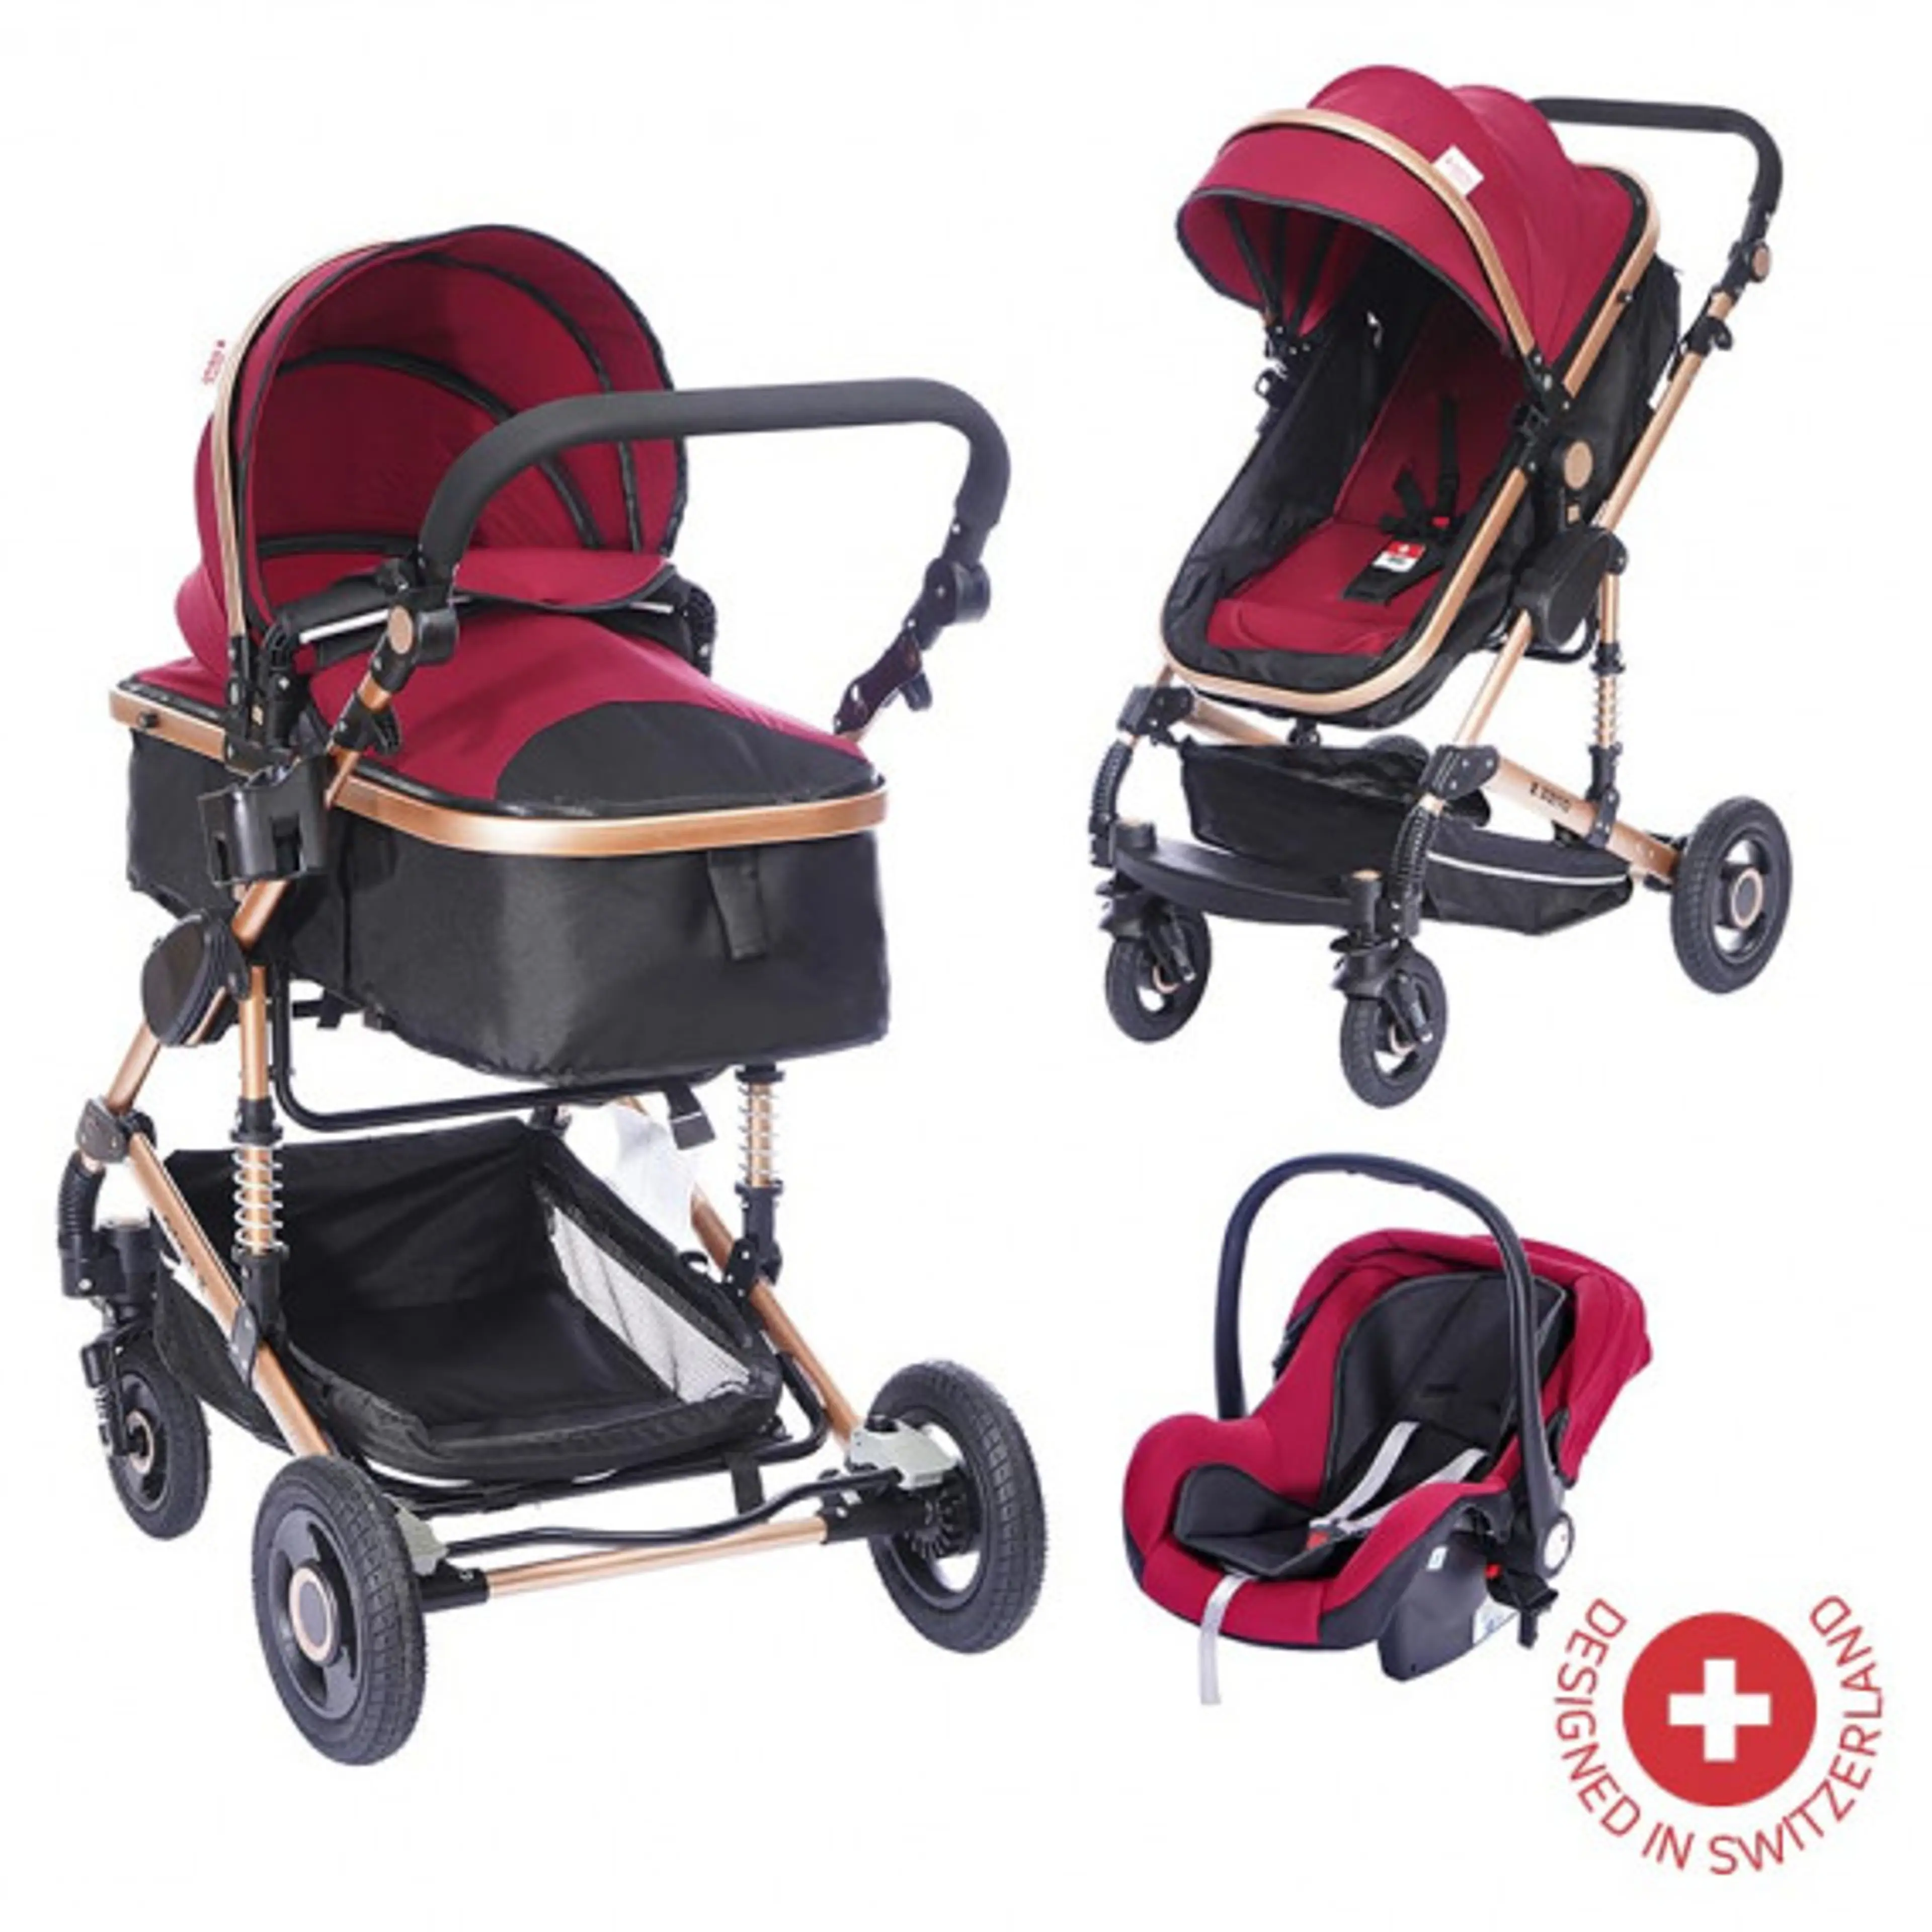 Комбинирана детска количка FONTANA 3 в 1 с швейцарска конструкция и дизайн, червена